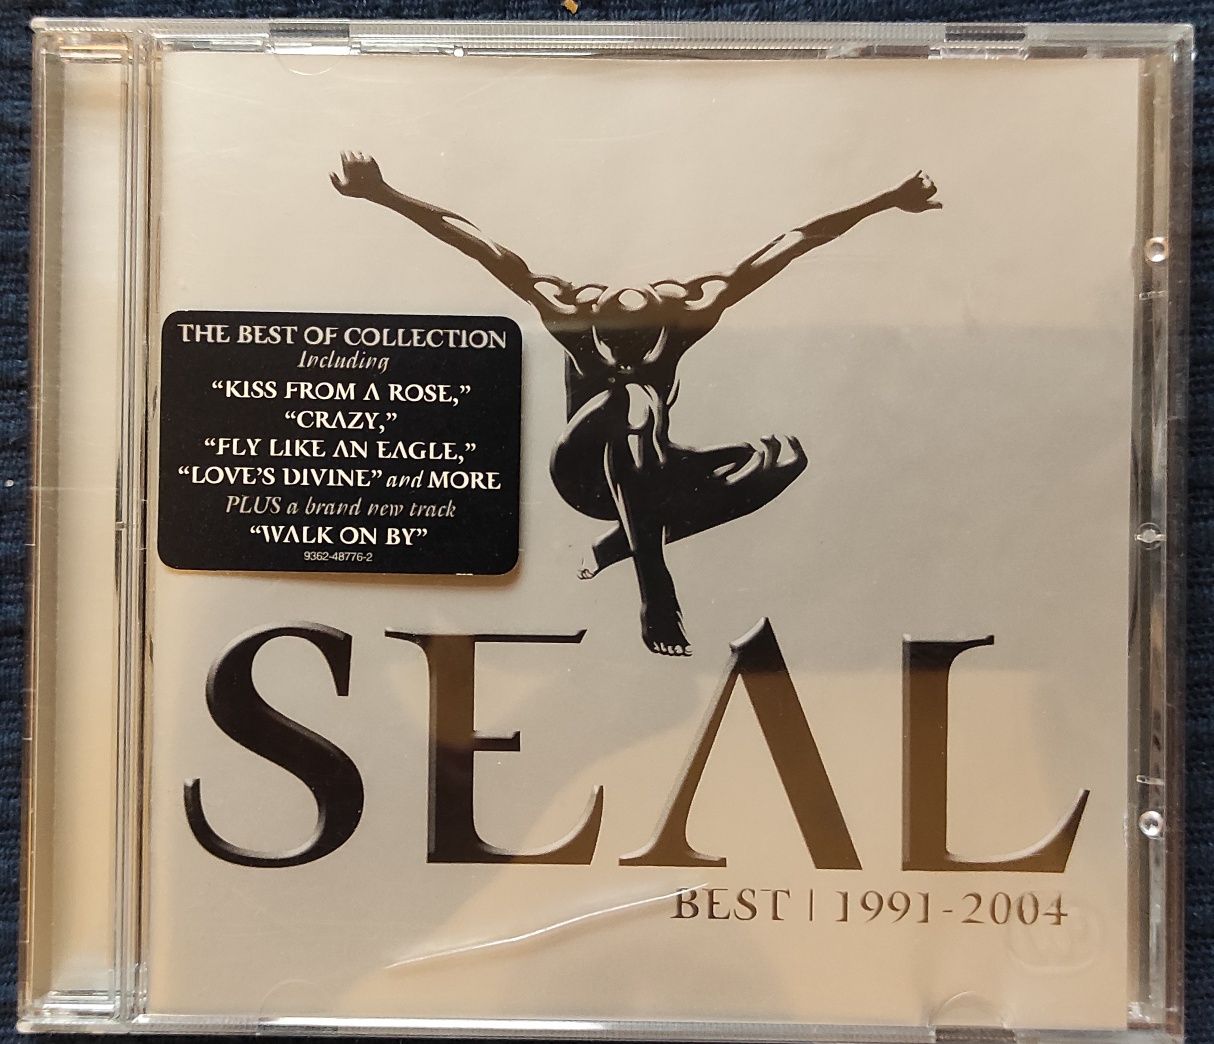 Seal "Best 1991 - 2004" płyta CD